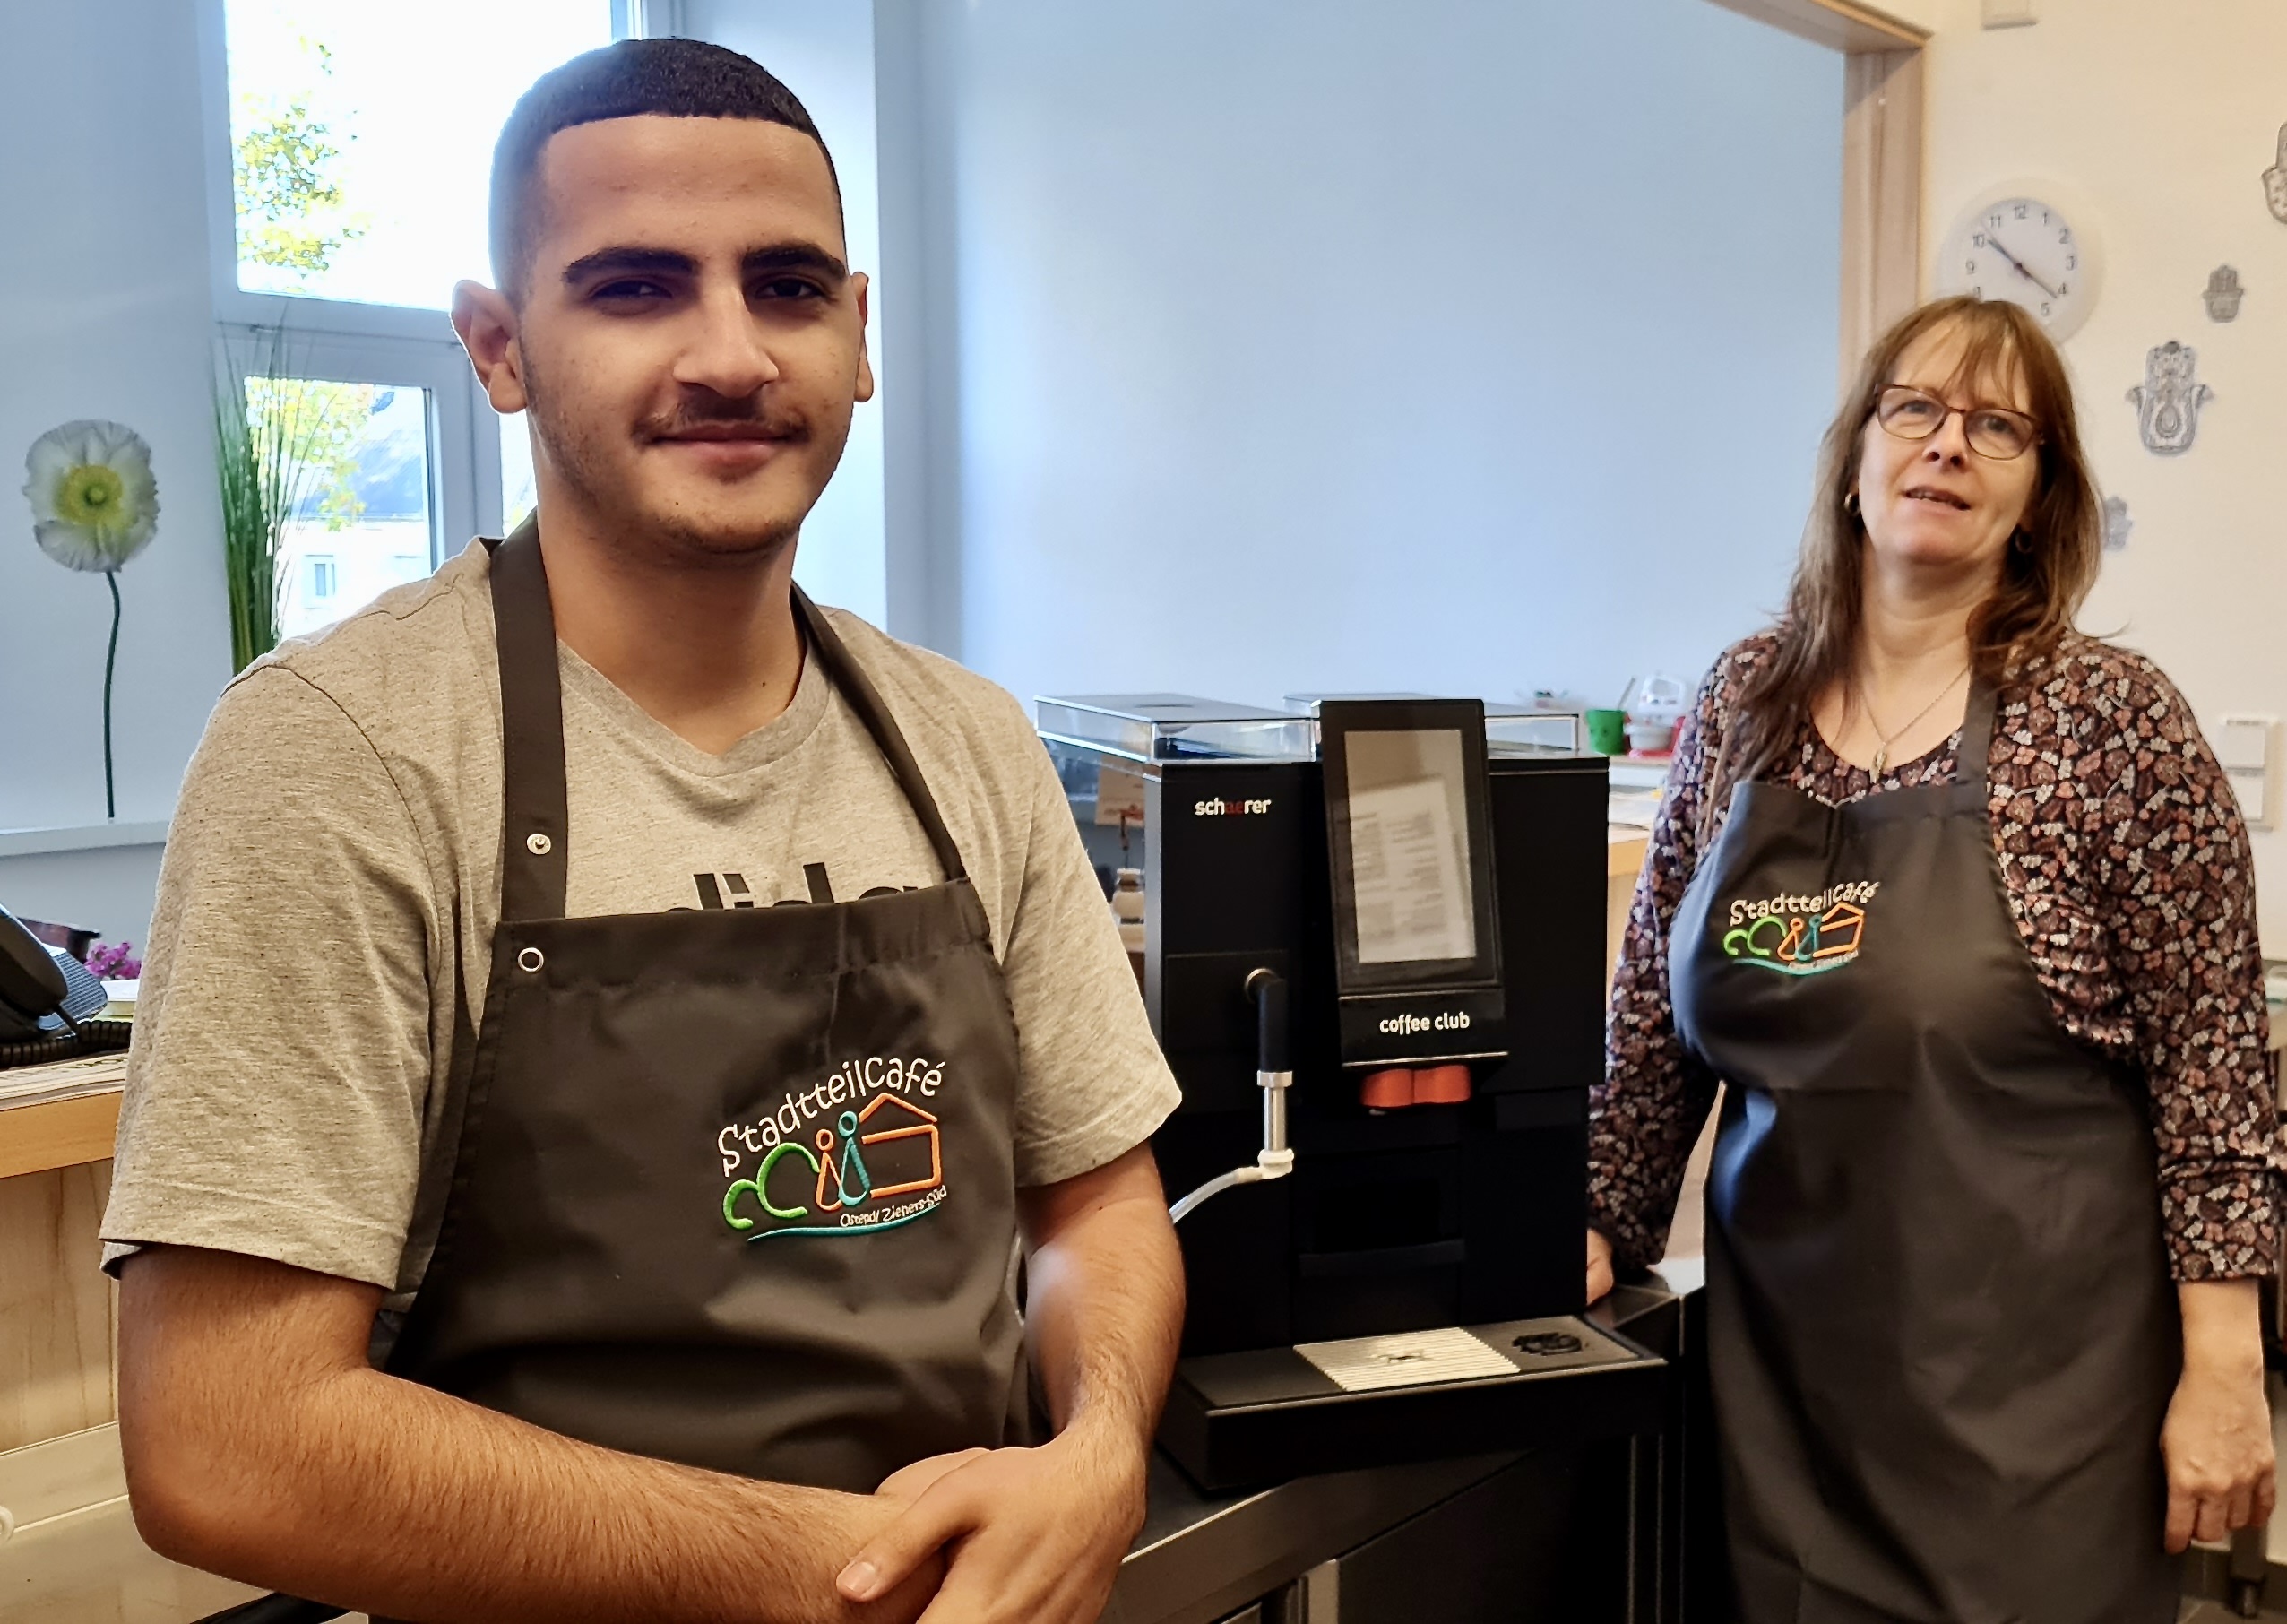 Ayoub Salim, ehrenamtlicher Helfer im Stadteilcafé, und Marina Spuck, Vorstandsmitglied beim Mütterzentrum, freuen sich über den gespendeten Schaerer-Vollautomaten Coffee Club. Foto: Schaerer